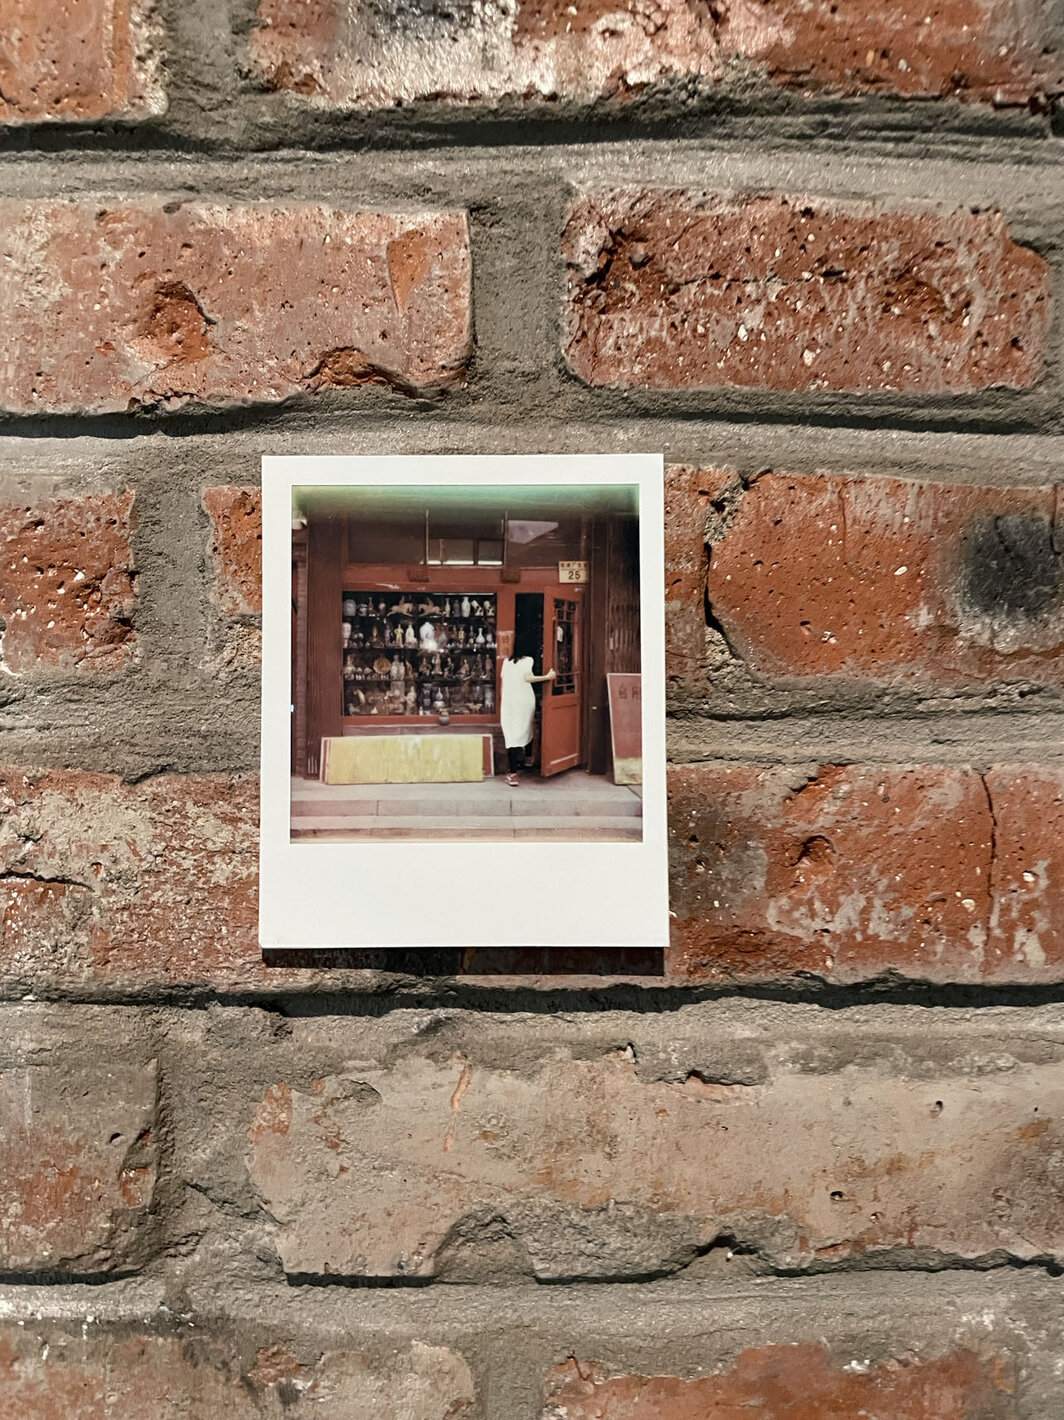 马秋莎展览“琉璃厂东街52号”展厅后墙上的照片.